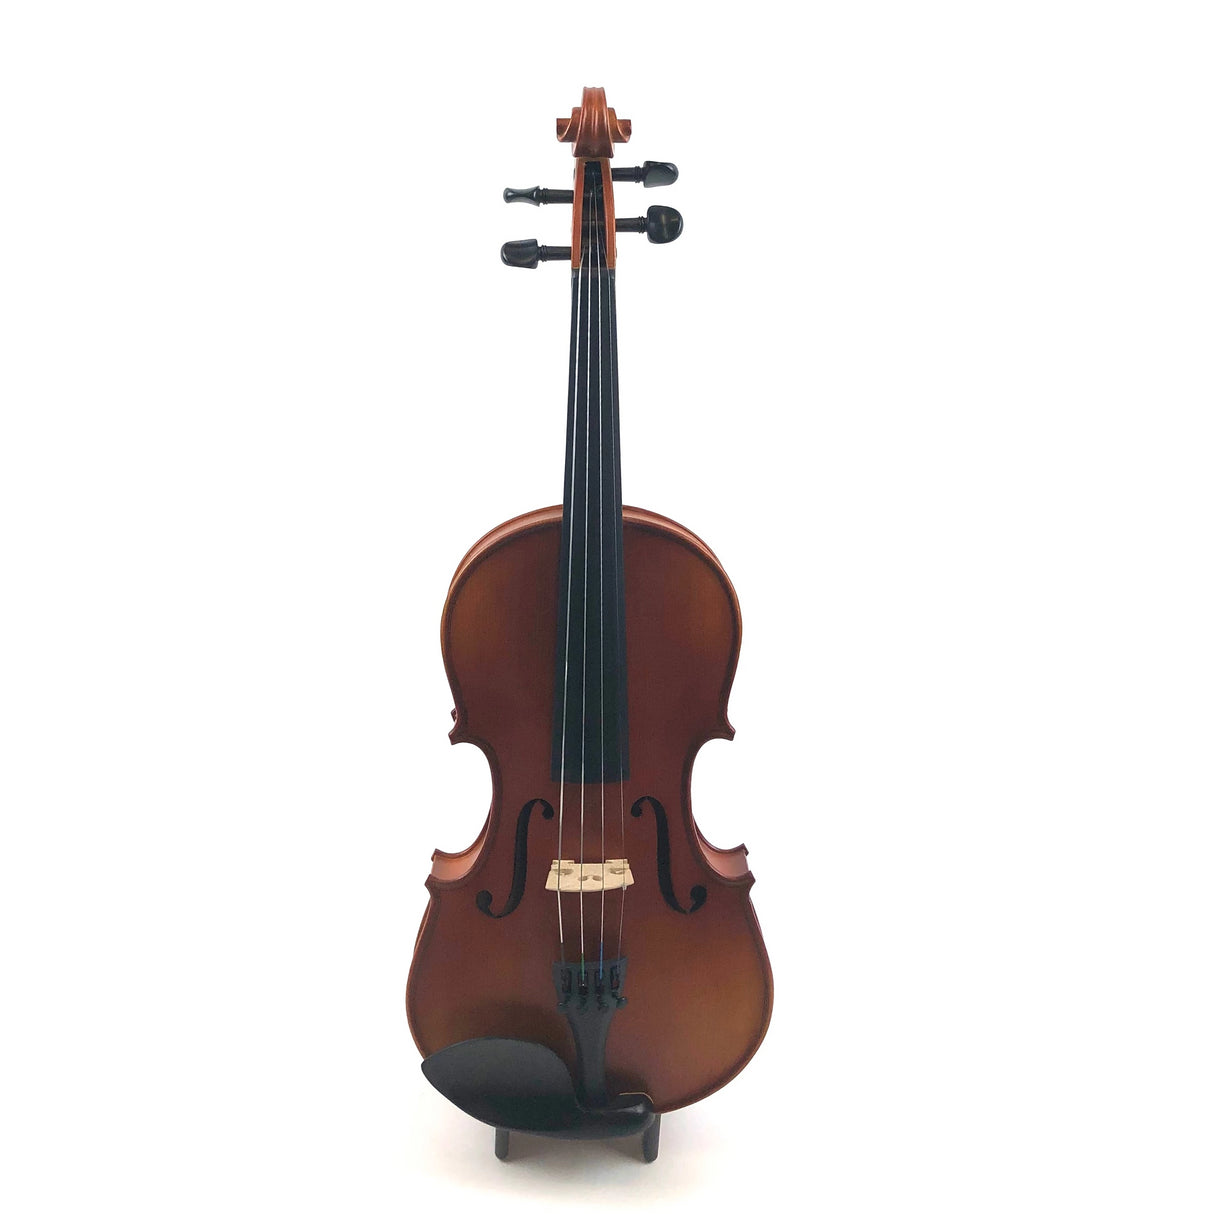 Sandner Violinset Mod. 302 4/4 - Musik-Ebert Gmbh